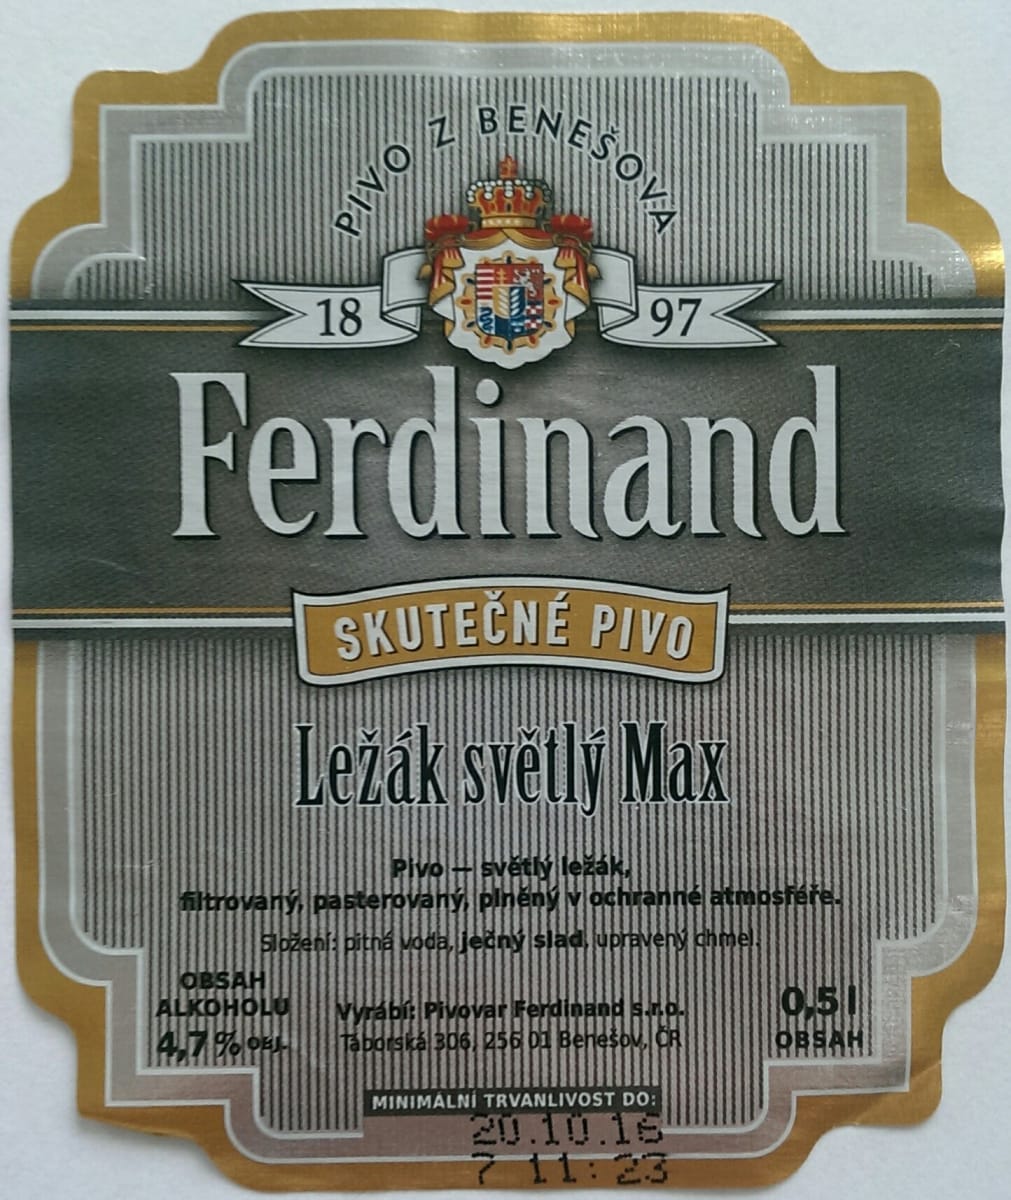 Ferdinand Ležák světlý Max